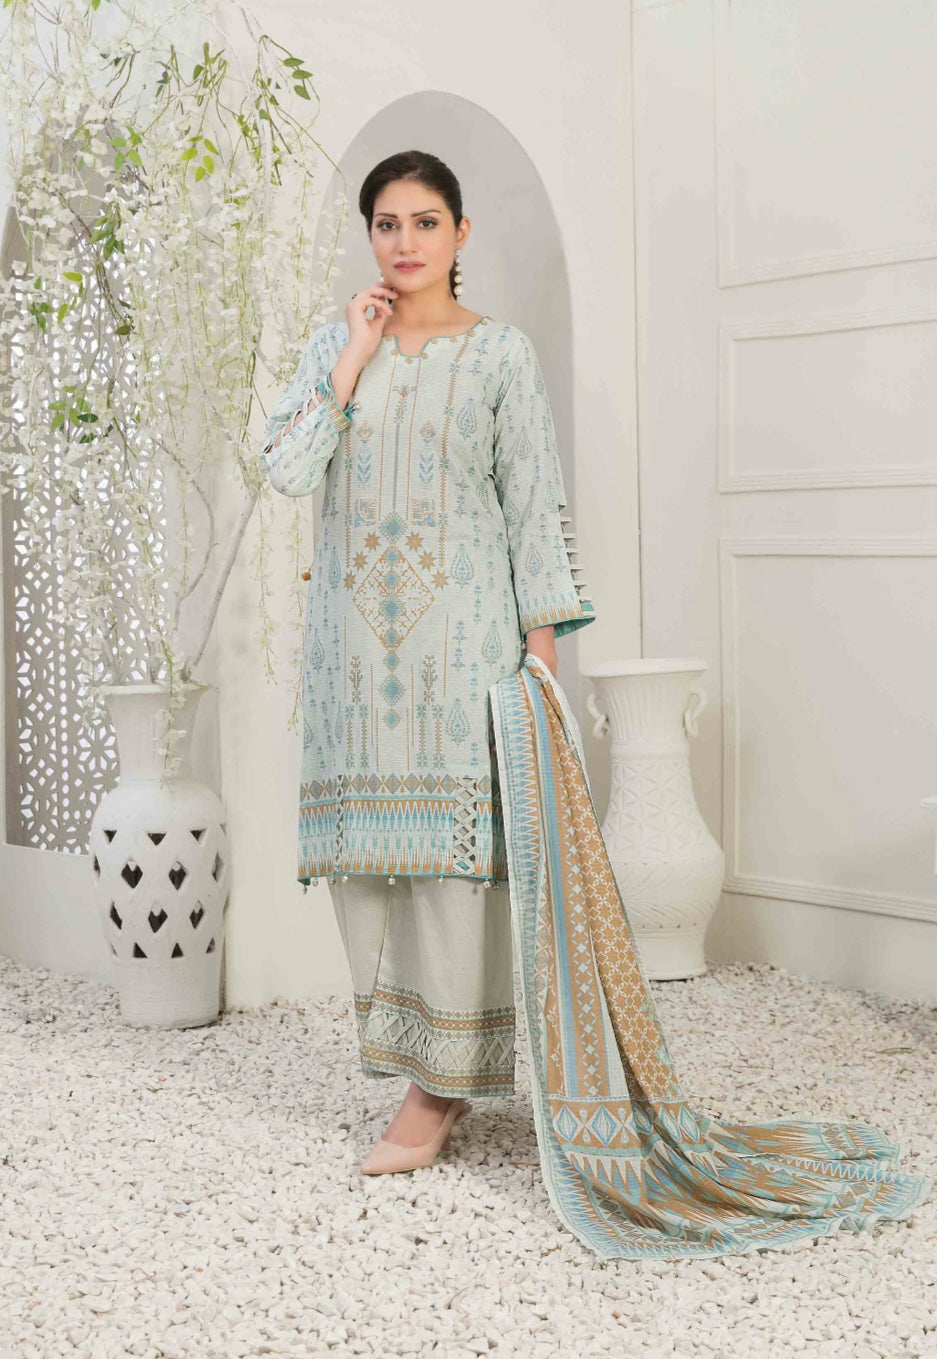  TAWAKKAL - Pakistani clothes